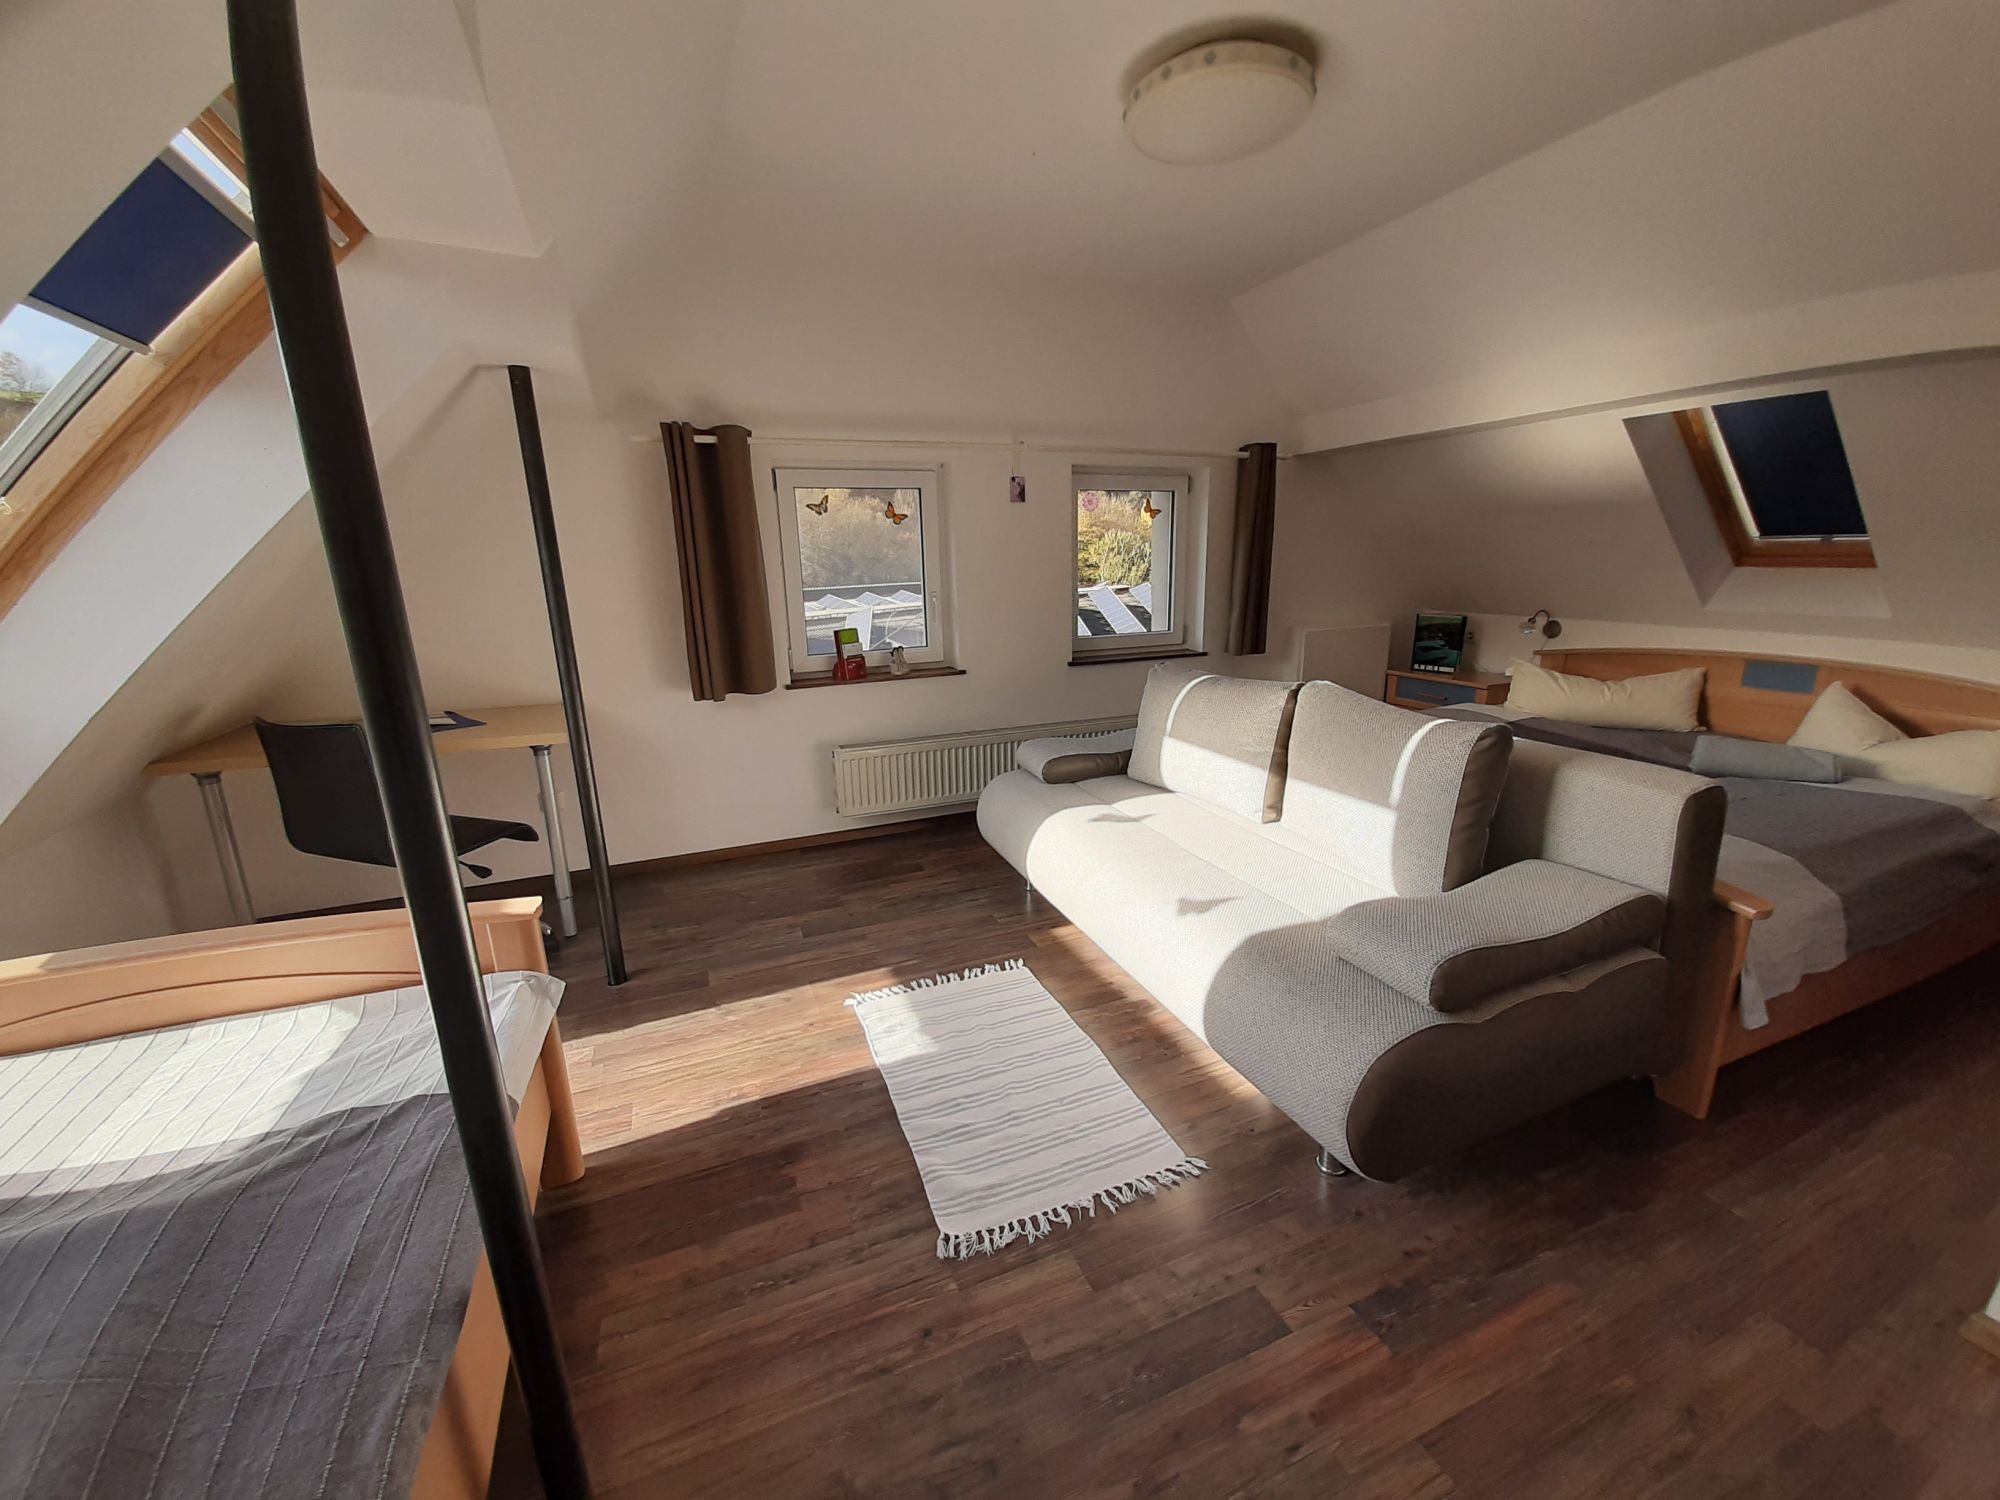 Ferienhaus Eifel - Schlafzimmer Enz in der Mansarde